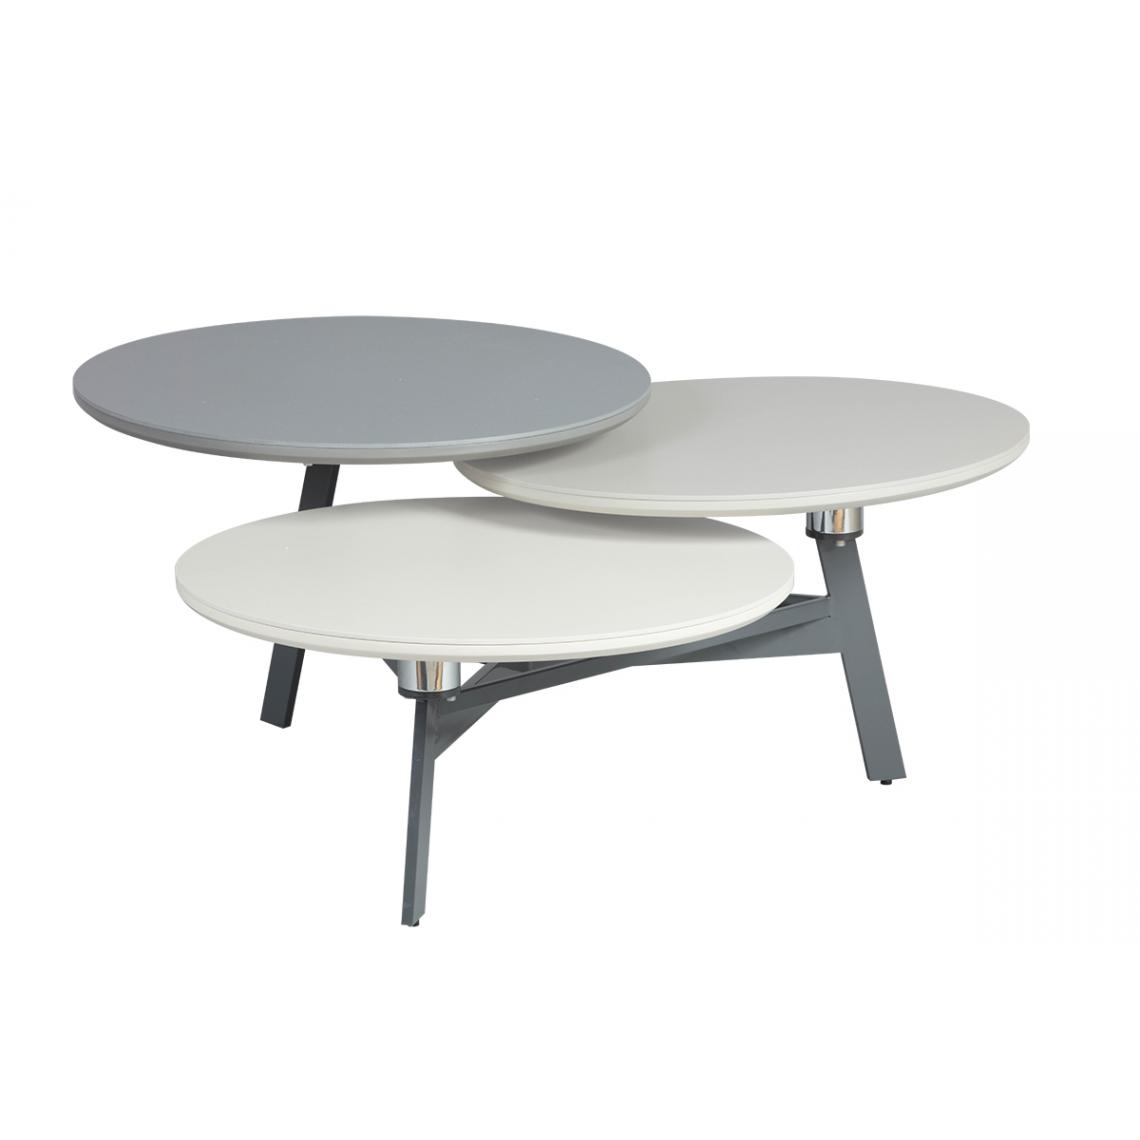 Pegane - Table basse en acier / MDF coloris gris / blanc / sable - Longueur 100 - 134,5 x Largeur de 94,5 - 124,5 x Hauteur 44 cm - Tables basses